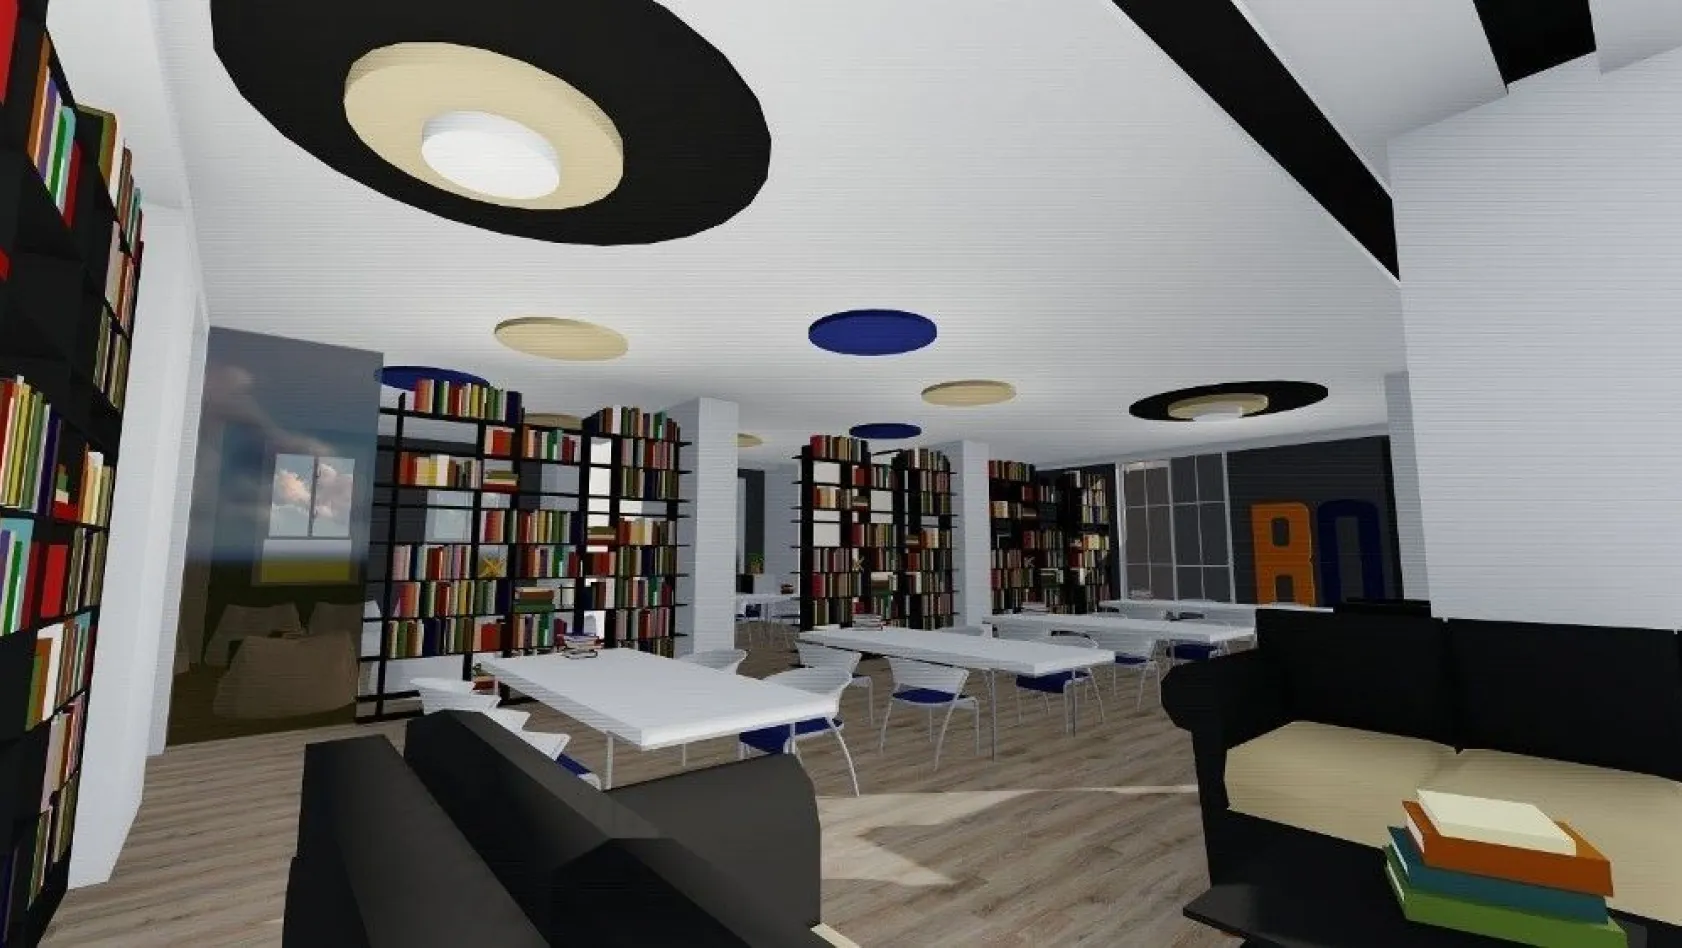 Bingöl Belediyesi, kentin ilk semt kütüphanesini inşa edecek
